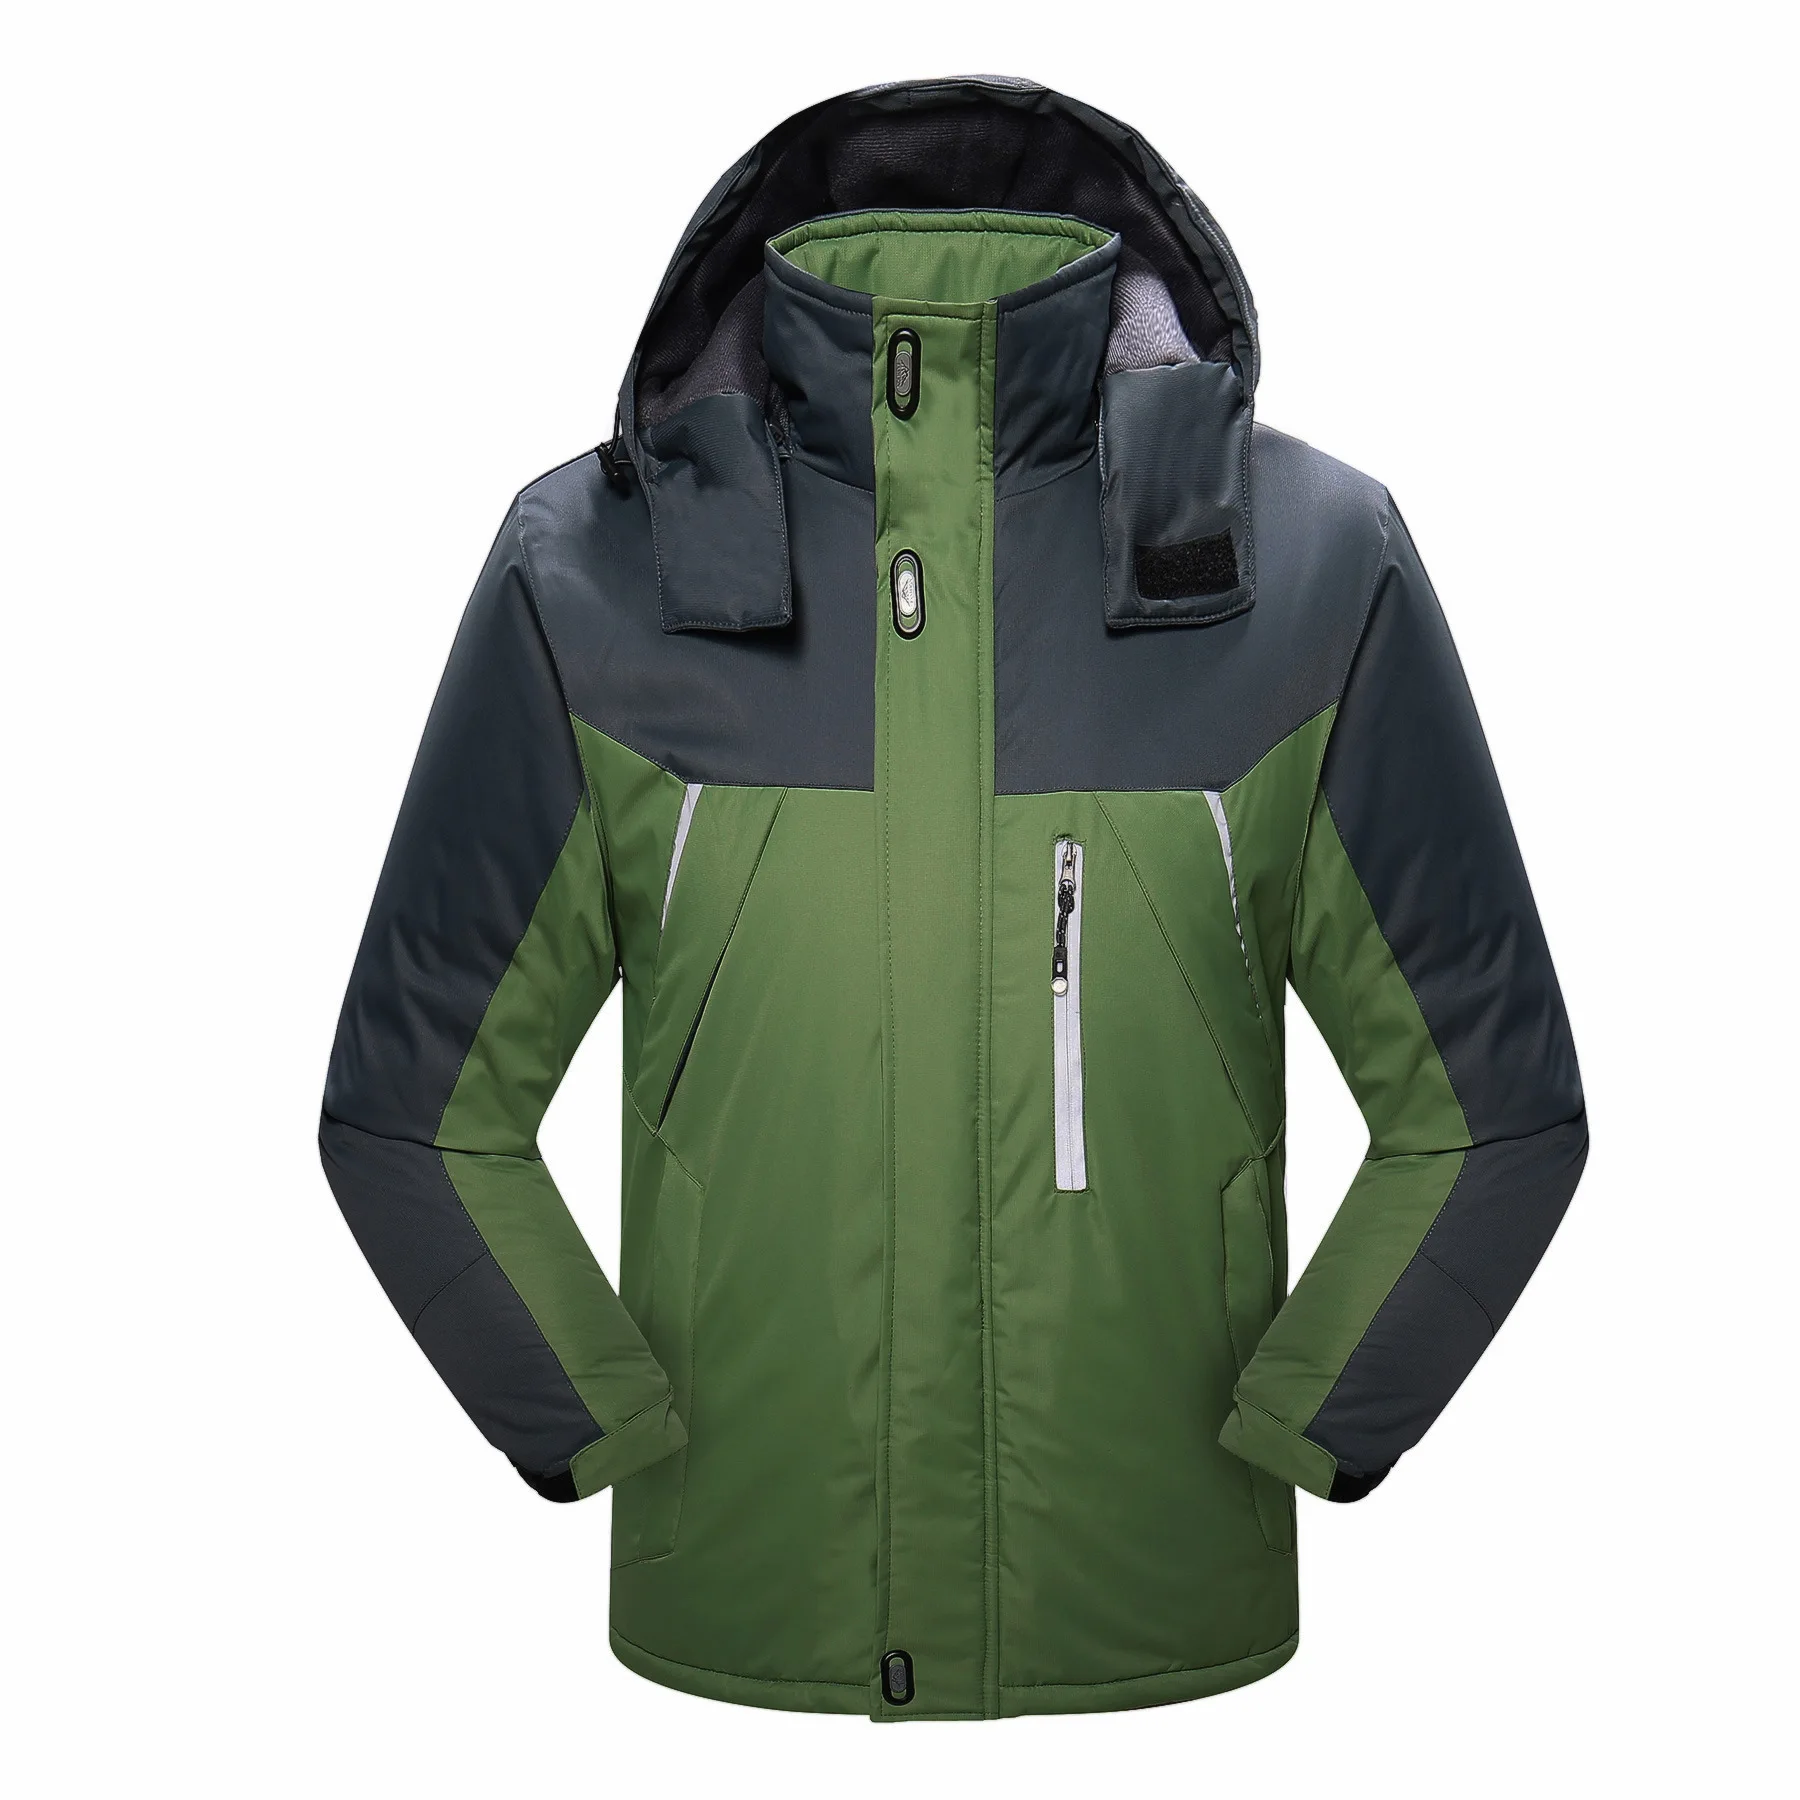 Мужская ветрозащитная спортивная куртка, теплая куртка для катания на лыжах, походная лыжная куртка, водонепроницаемая одежда для сноубординга - Цвет: Зеленый